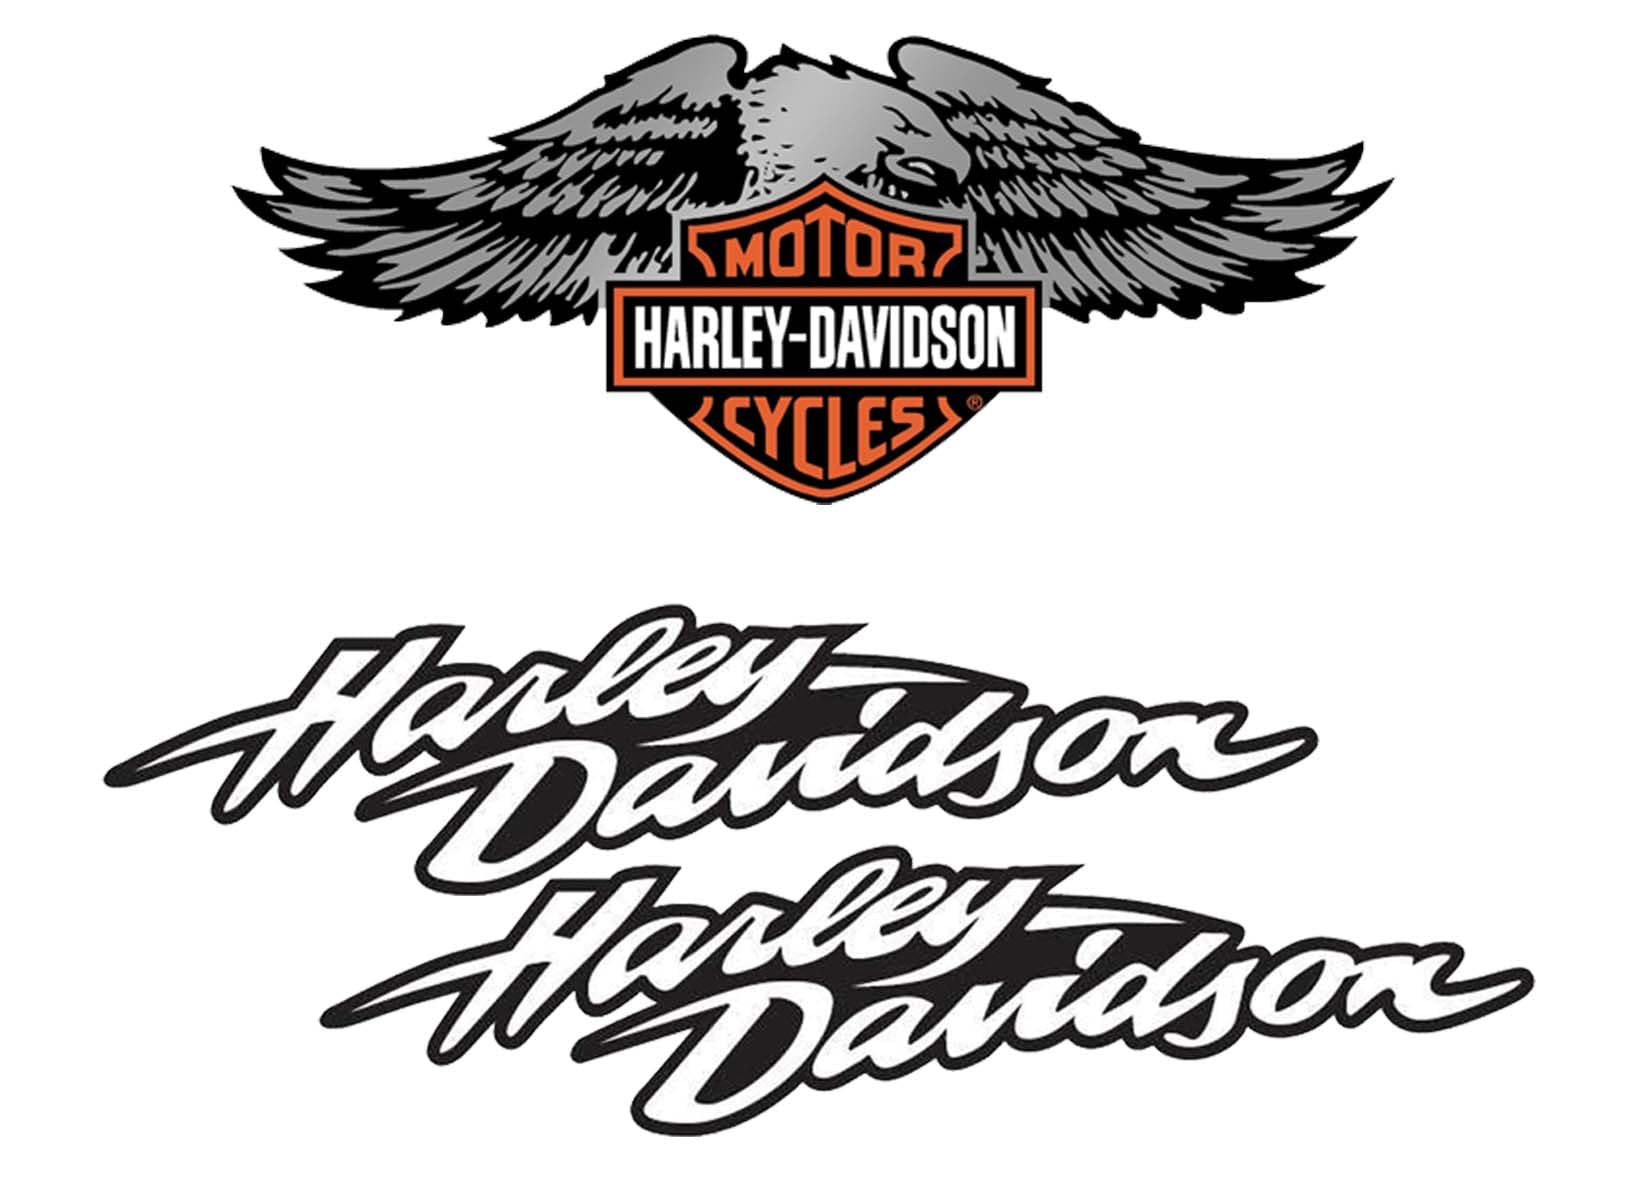 Reflektierende Aufkleber für Motorradhelm, Hommage an Harley Davidson – Adler (3 Sticker) von SUPER FABRIQUE